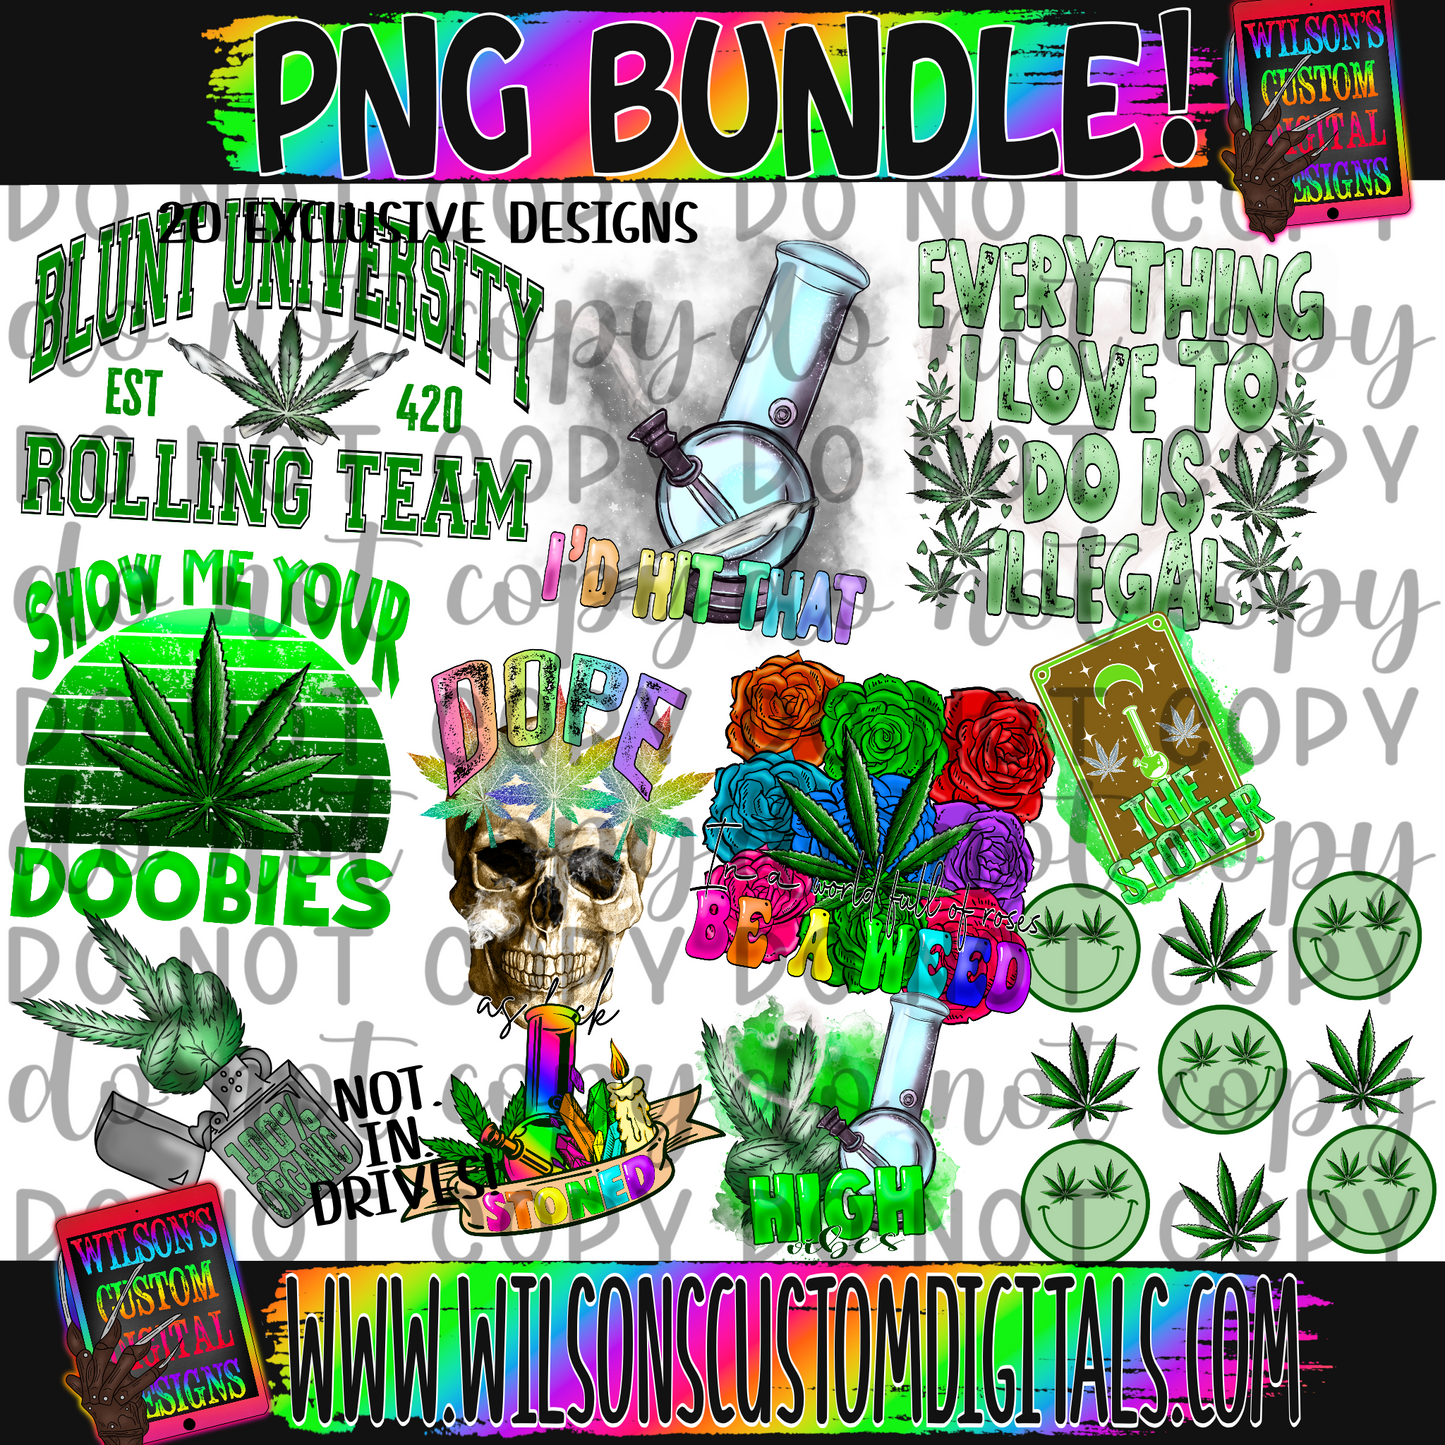 Special 420 bundle!